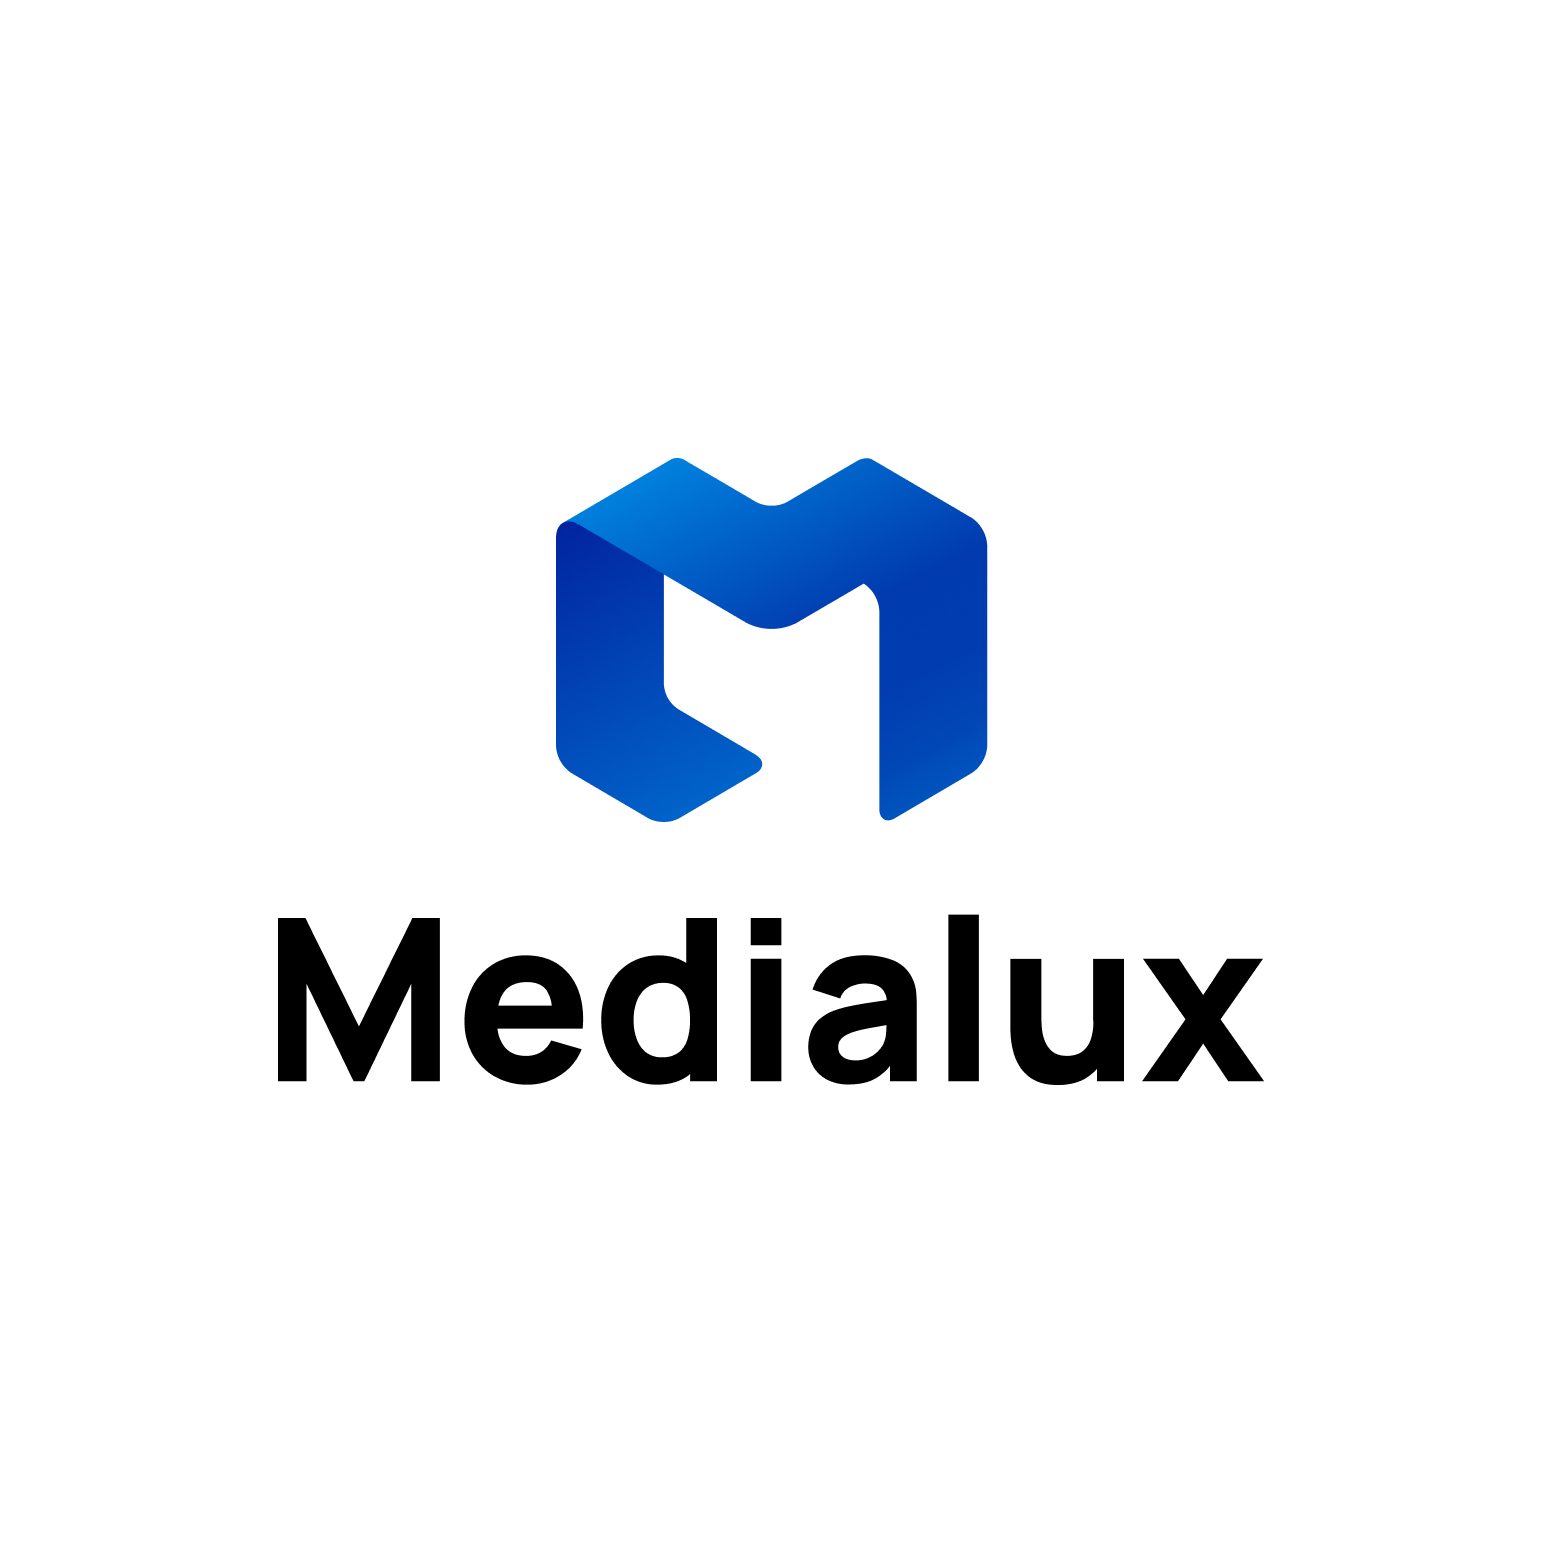 MediaLux